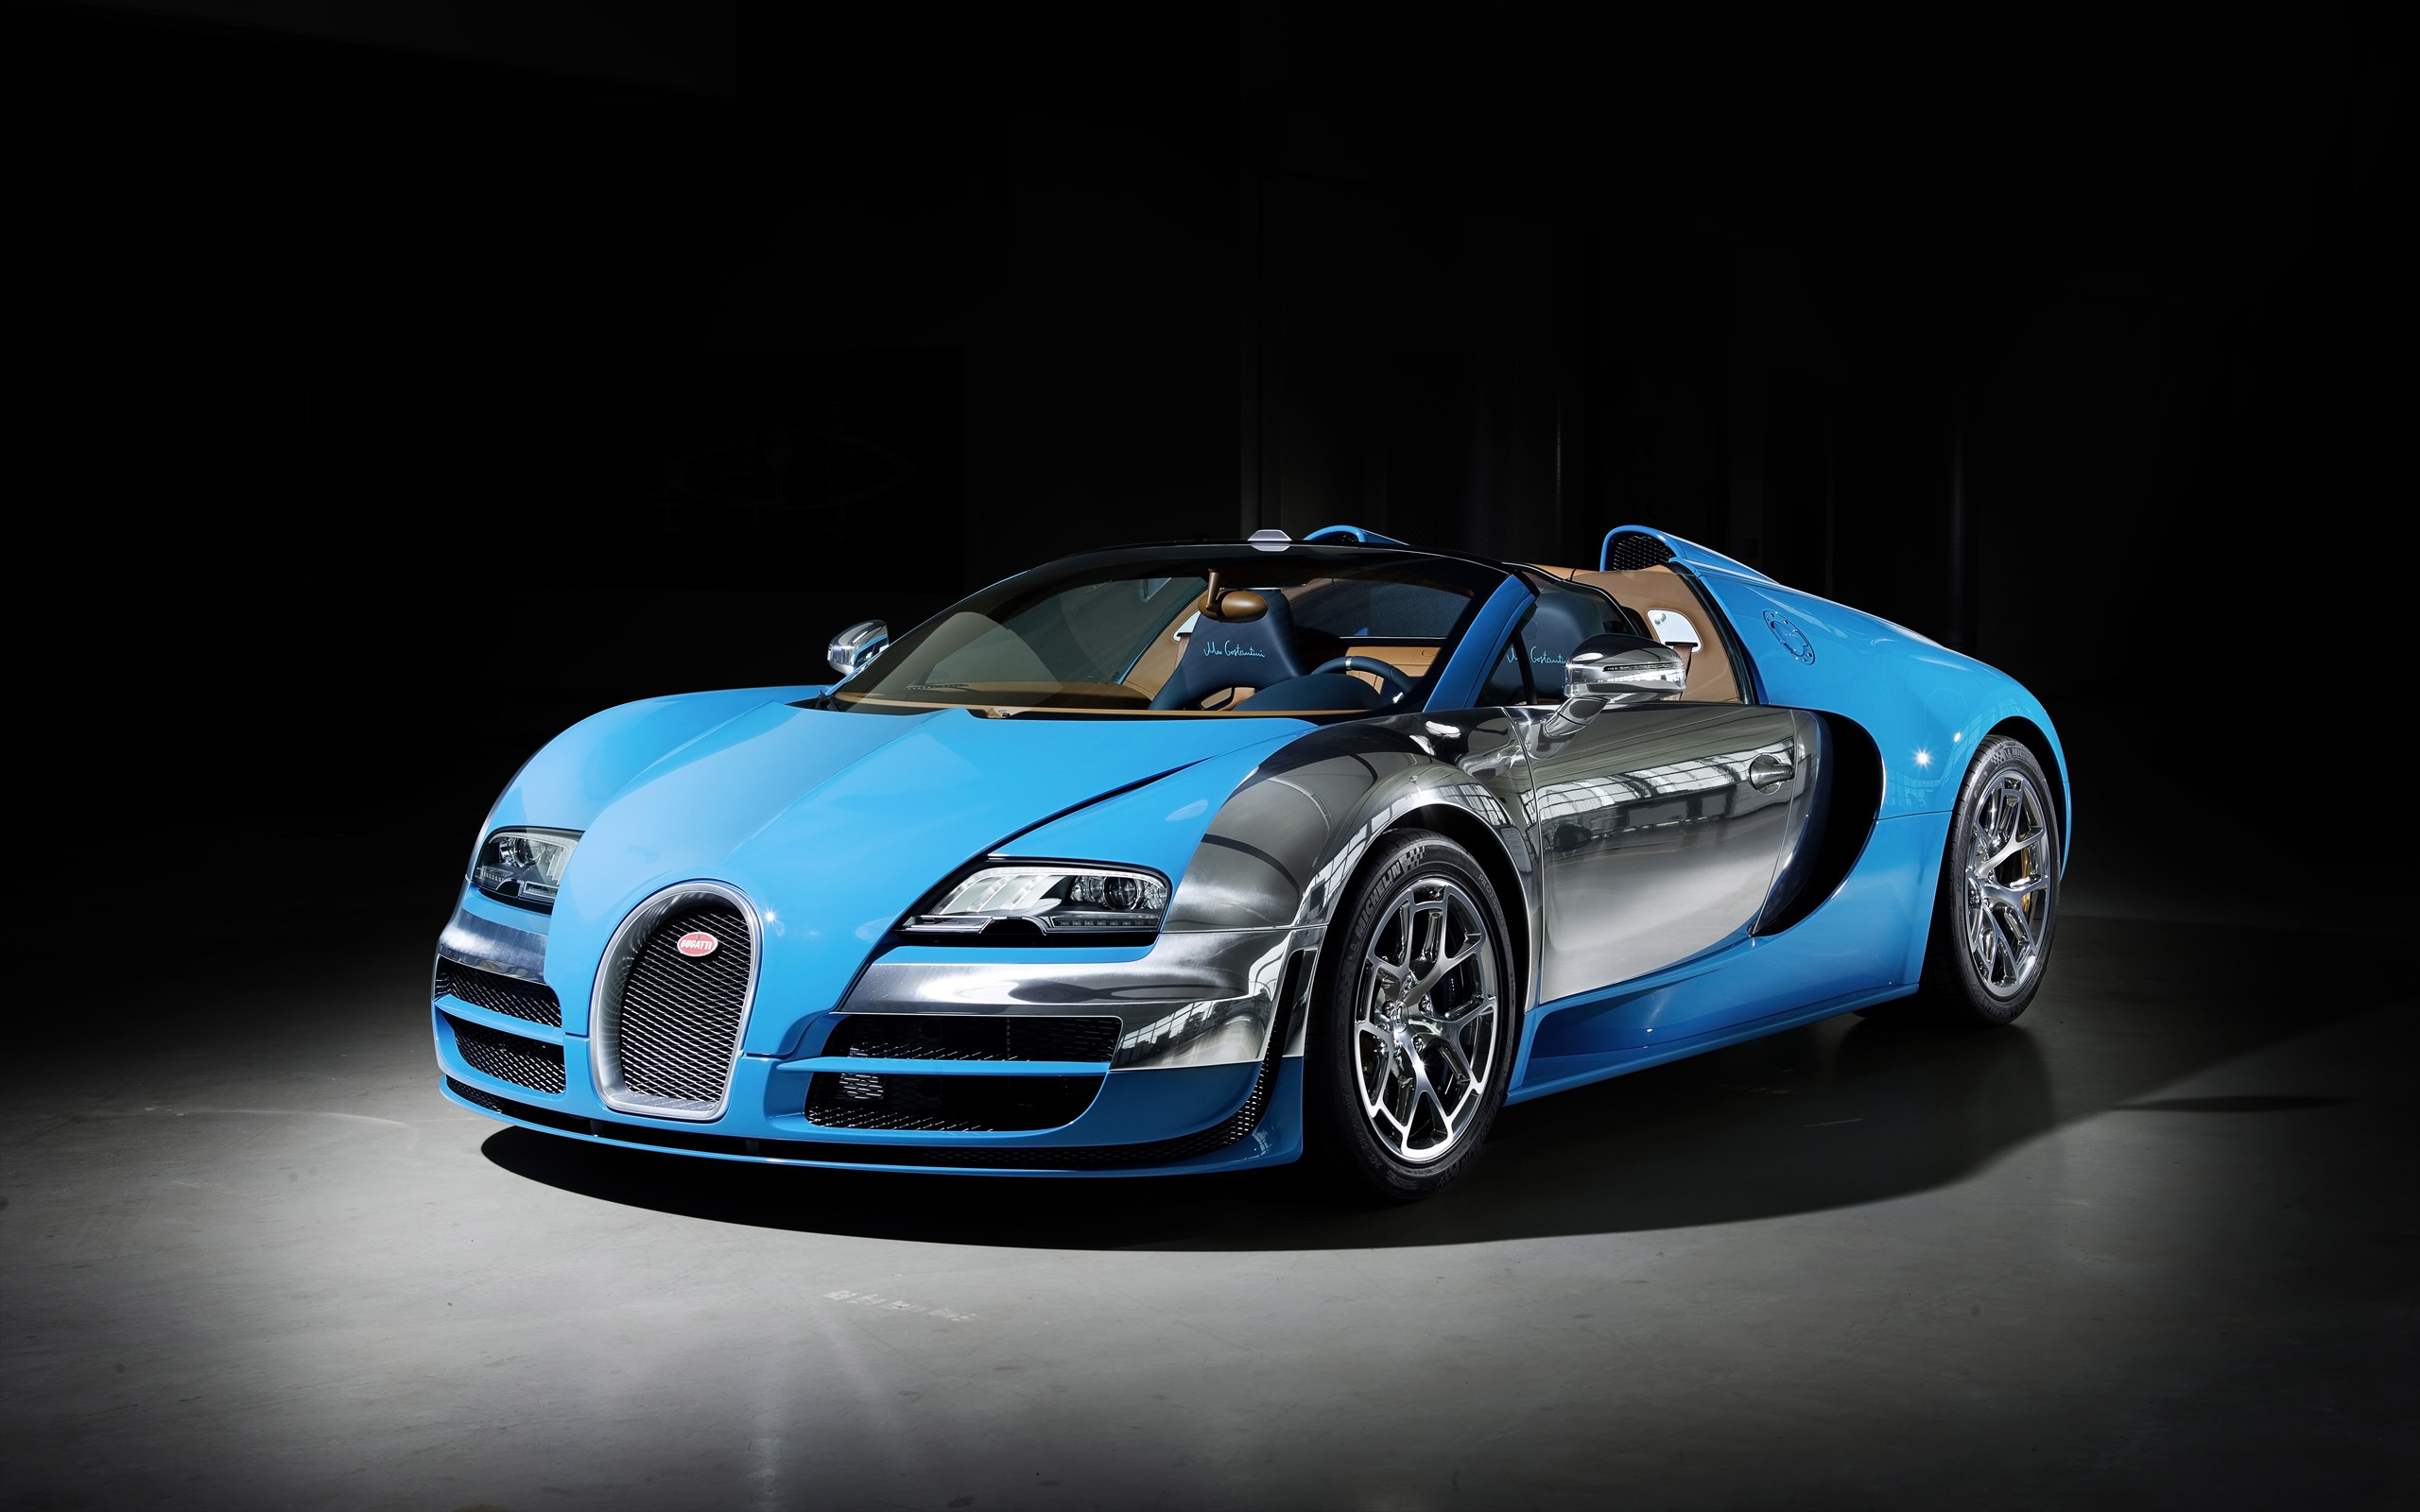 2013 Bugatti Veyron Grand Sport Vitesse - Bugatti Veyron 16.4 Grand Sport Vitesse 2013 , HD Wallpaper & Backgrounds